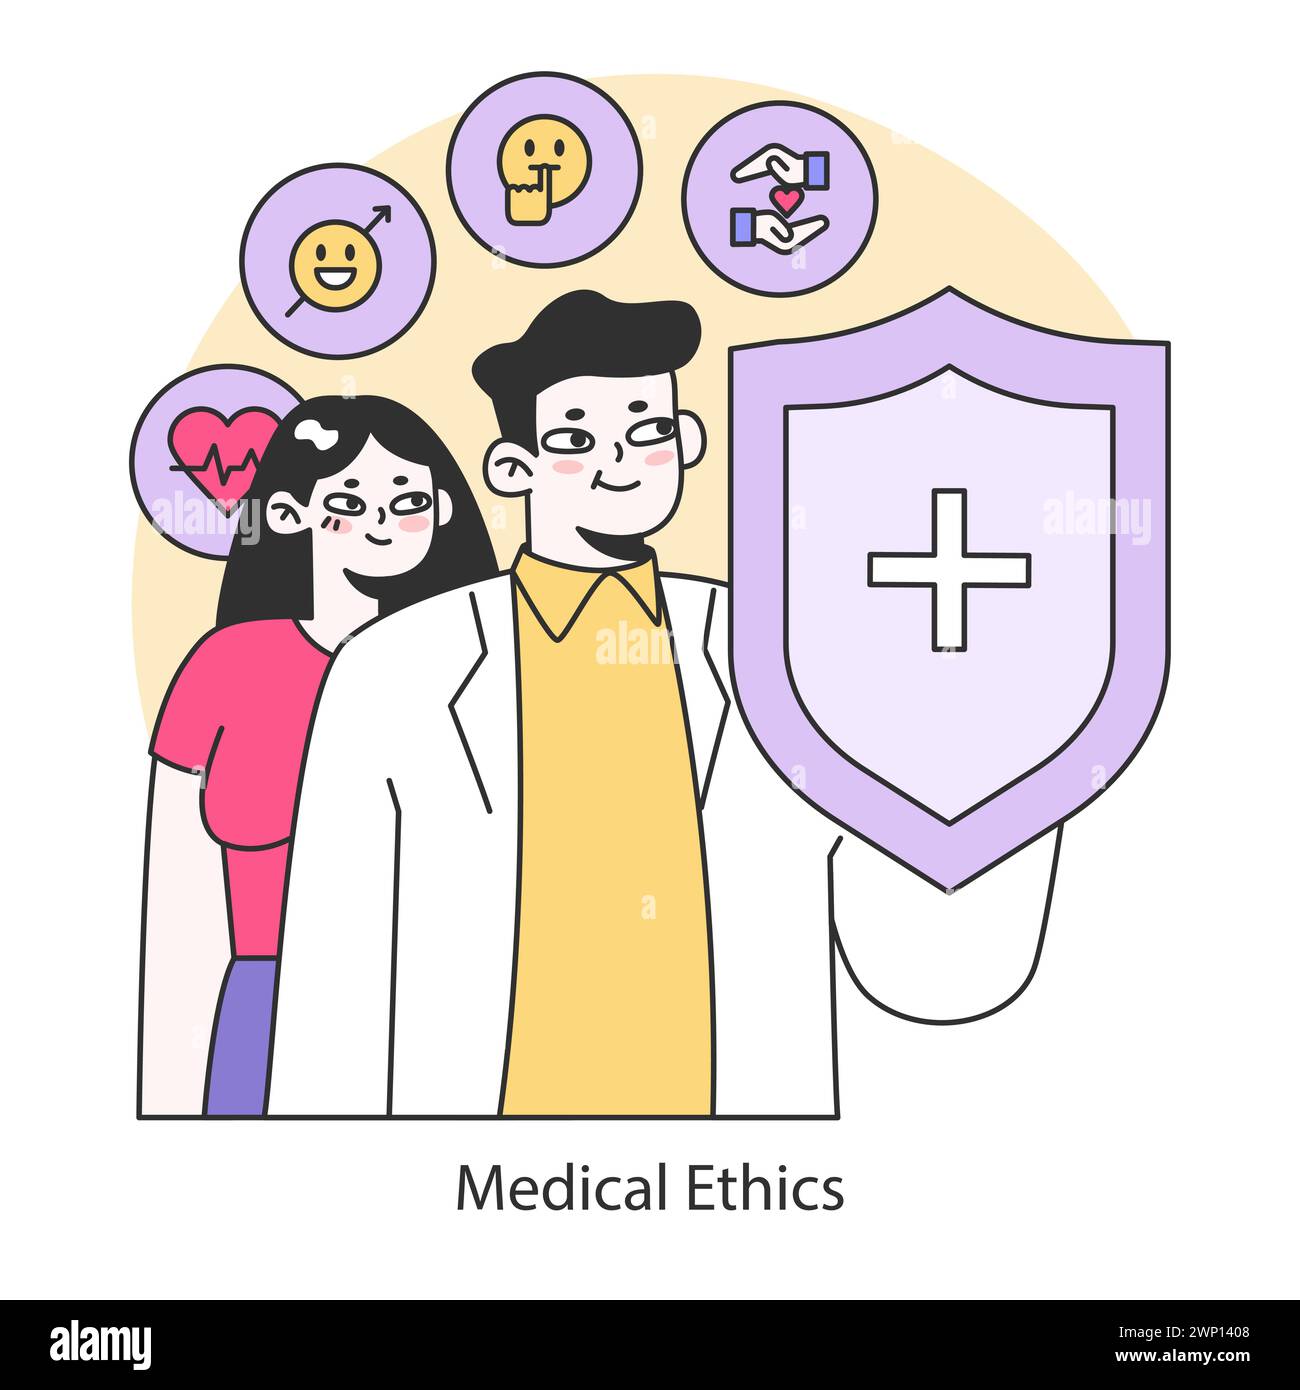 Medizinethik-Konzept. Eine Darstellung von Angehörigen der Gesundheitsberufe, die das Glück und die Rechte der Patienten wahren, symbolisiert durch einen Schutzschild. Illustration des flachen Vektors. Stock Vektor